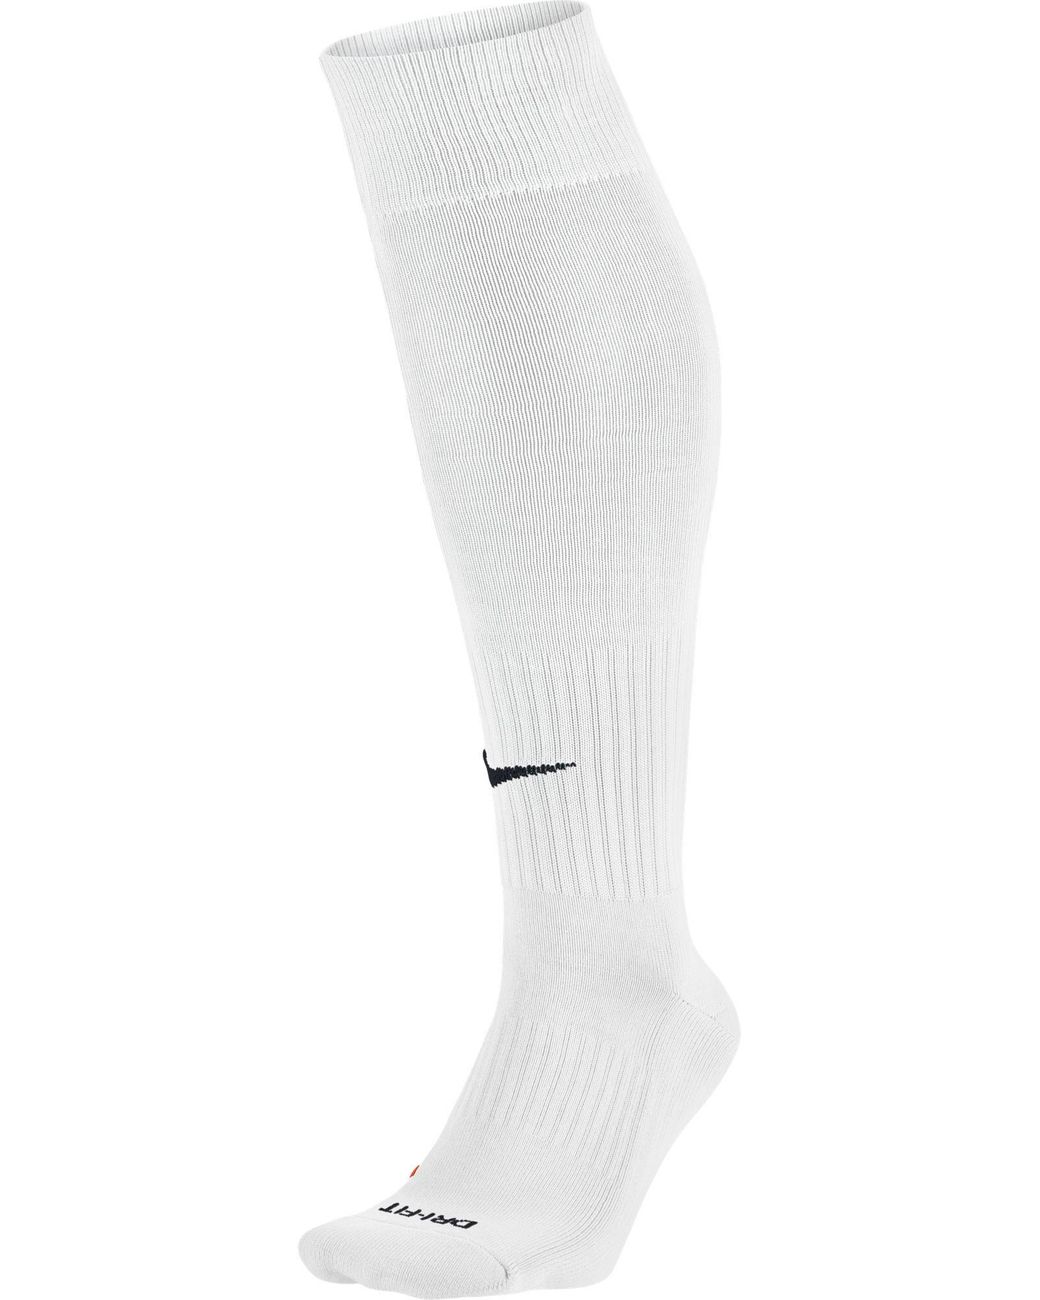 Nike Synthetic Classic Soccer Socks in White for Men - Lyst